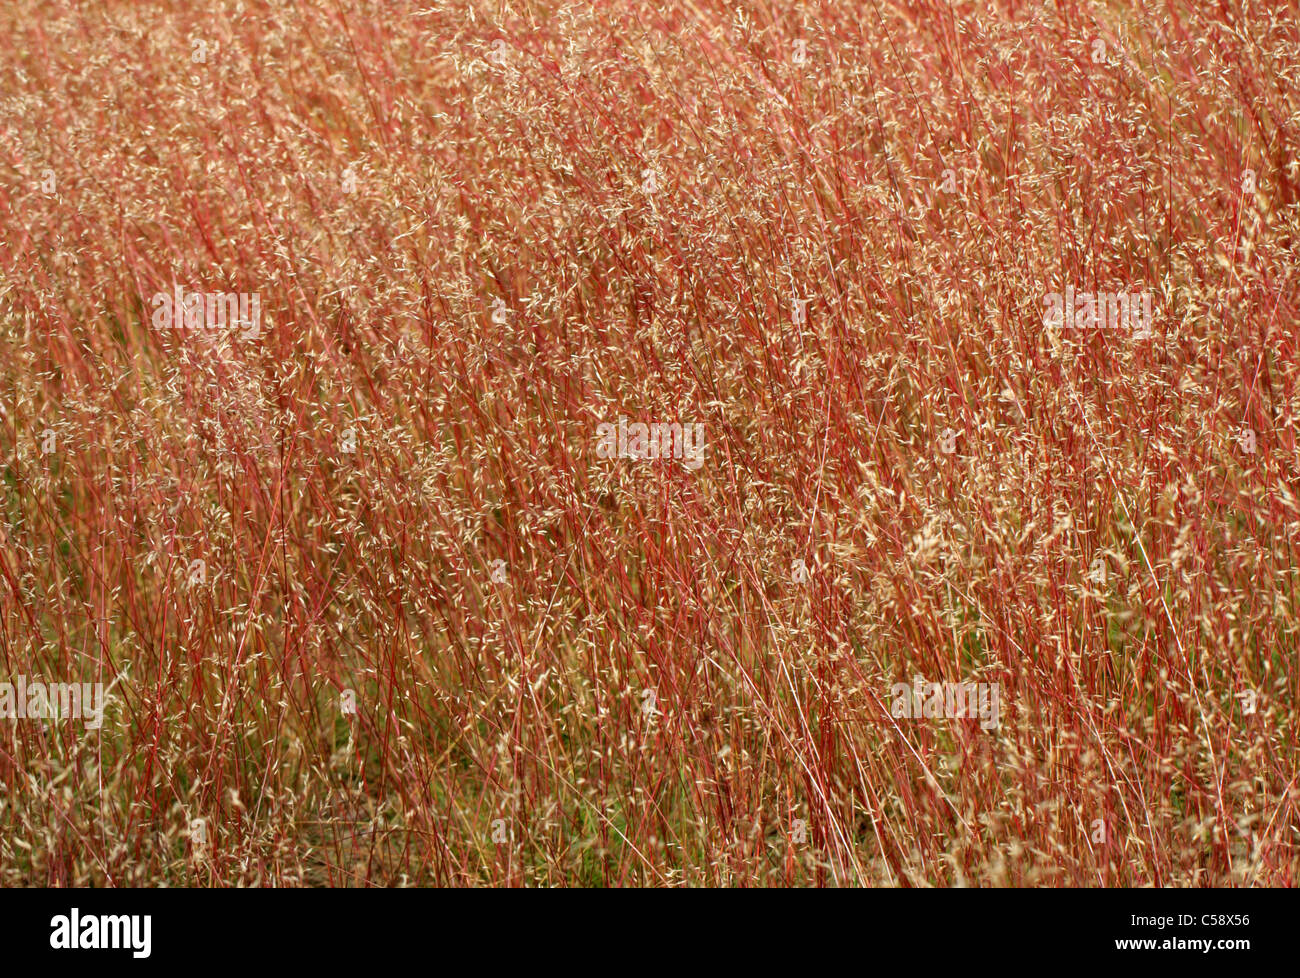 Welliges Haar-Rasen, Deschampsia Flexuosa, Poaceae. Eine schöne rote Stängel Grass, Rammamere Heide, Bedfordshire, UK (Juli). Stockfoto